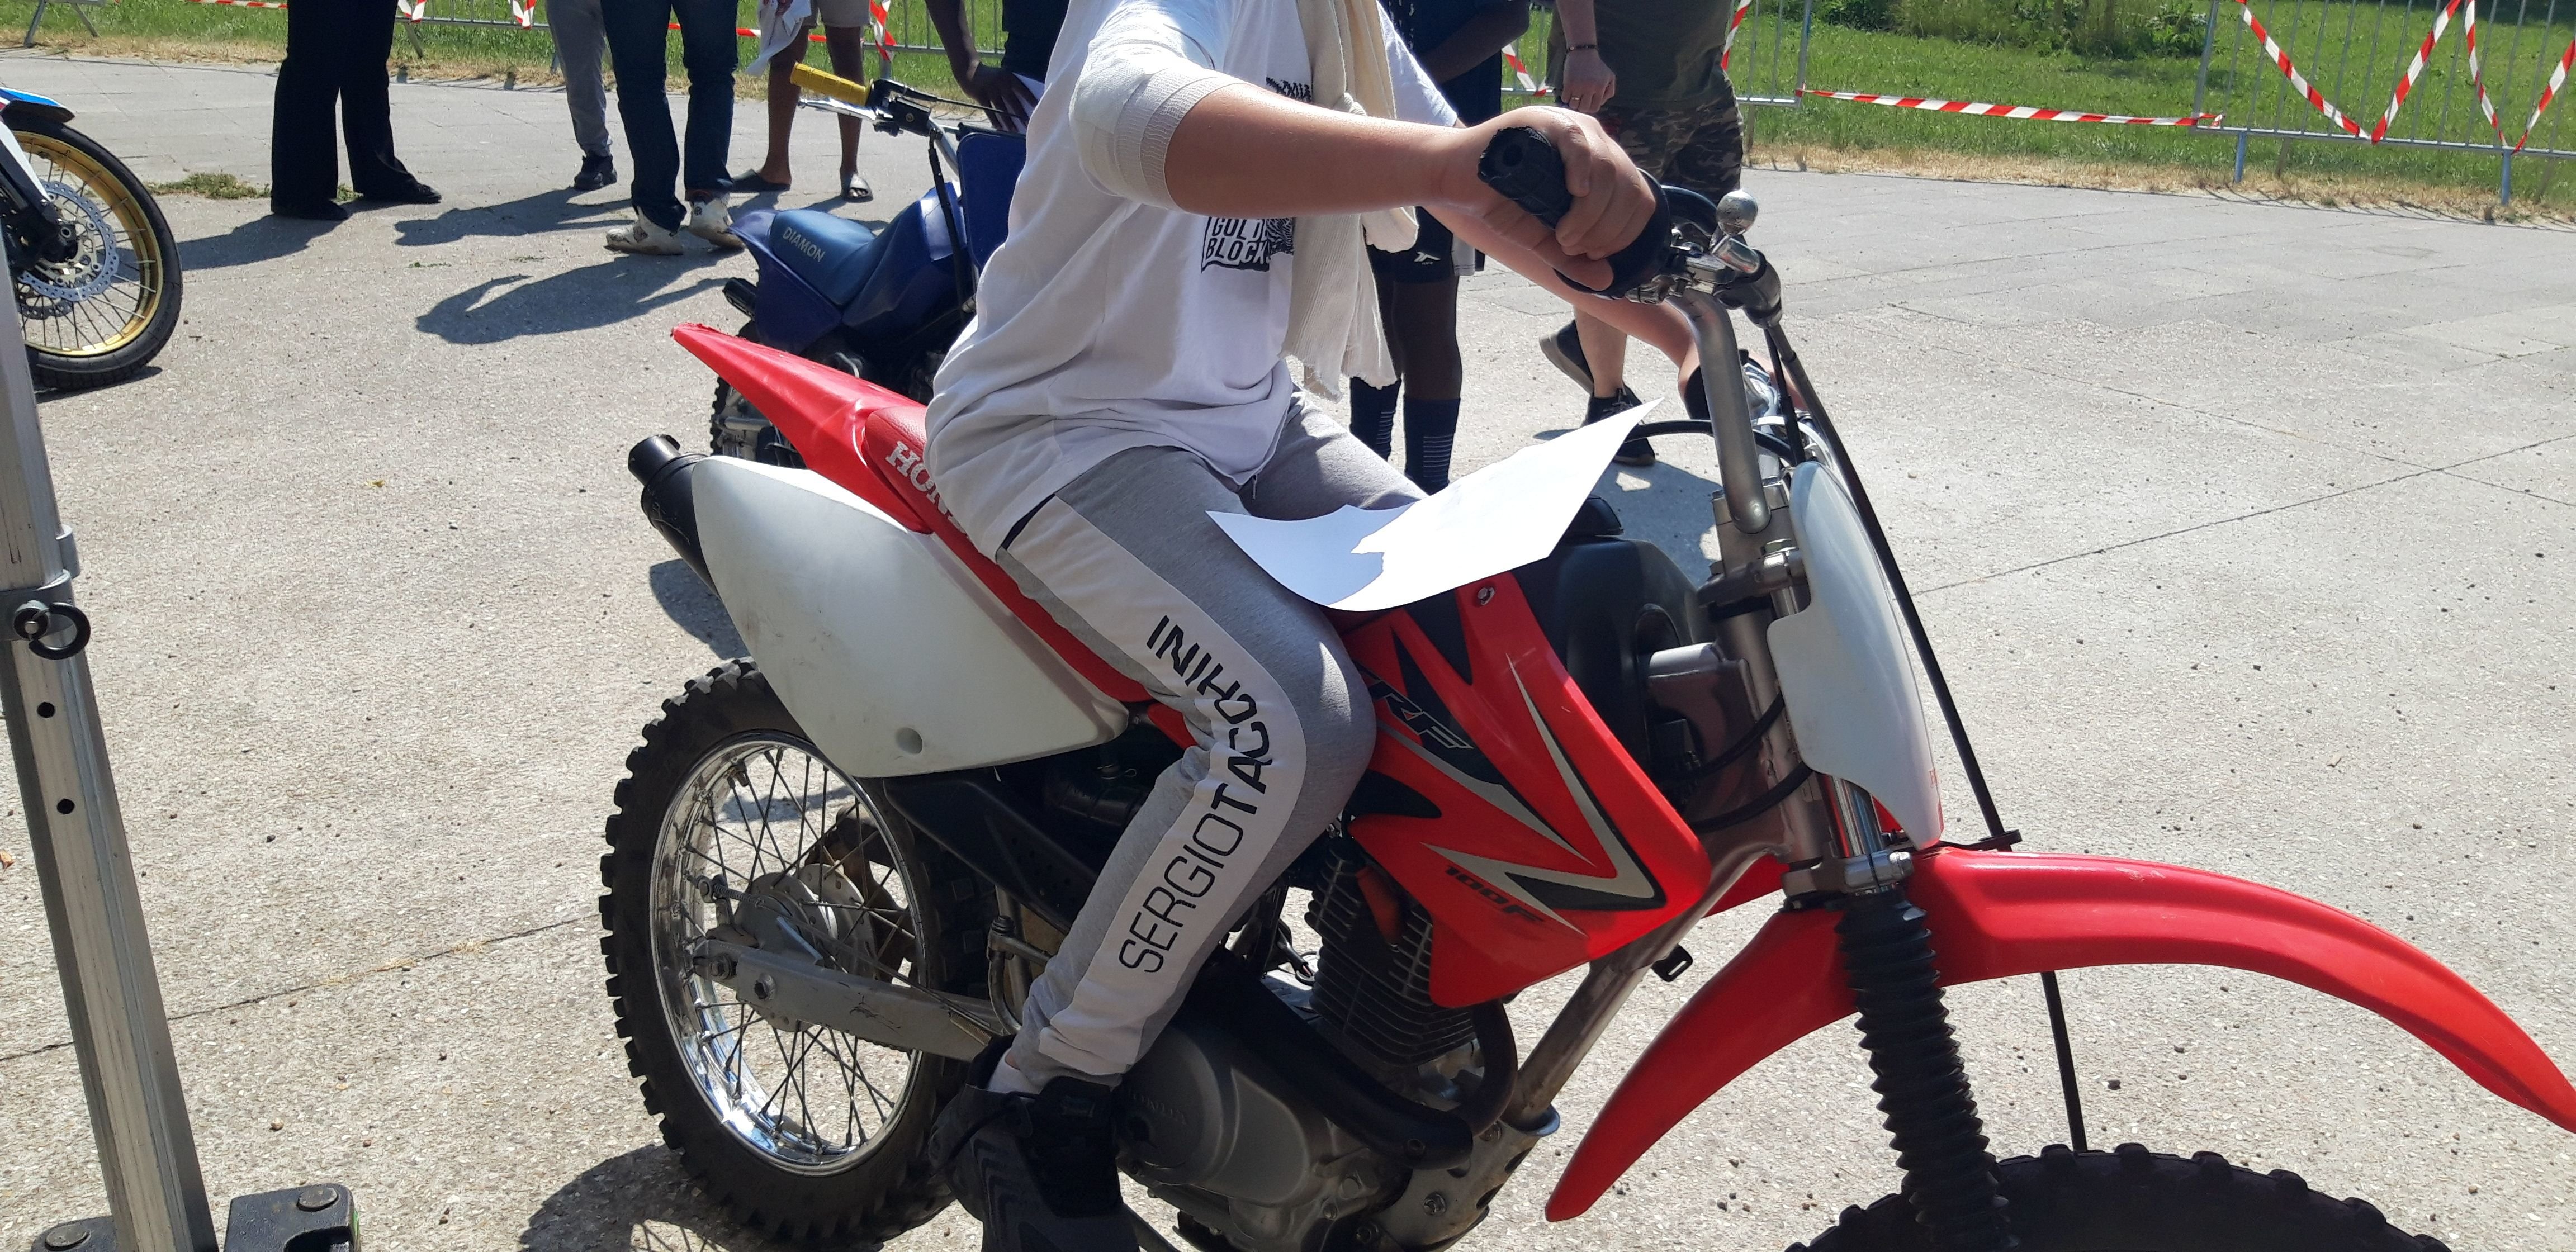 De jeunes adeptes des rodéos à moto ont accepté de parler de leur pratique. LP/Aurélie Foulon